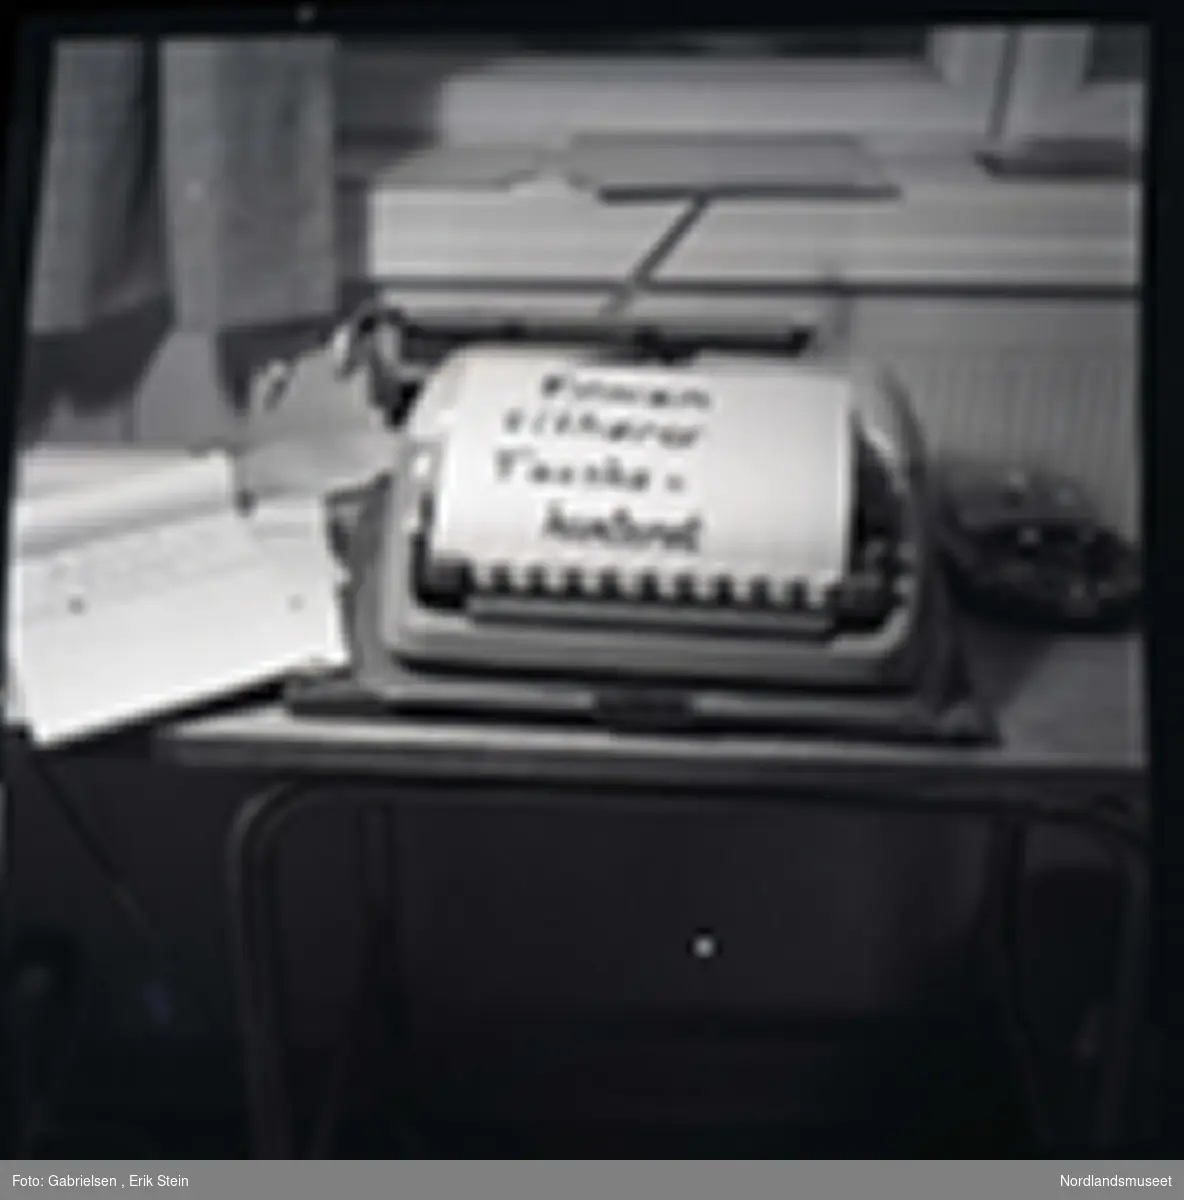 Fotografi av en gammel skrivemaskin 
som står på en pult inne i et kontor under en vindu med noen gardiner som det ligger en lapp på som står filmen tilhører 
Fauskekontoret og det ligger noen papirblokker
vedsiden av skrivemaskinen og man ser noen
mapper som ligger på vinduskarmen i kontoret 
og man ser en ovn under pulten i kontoret